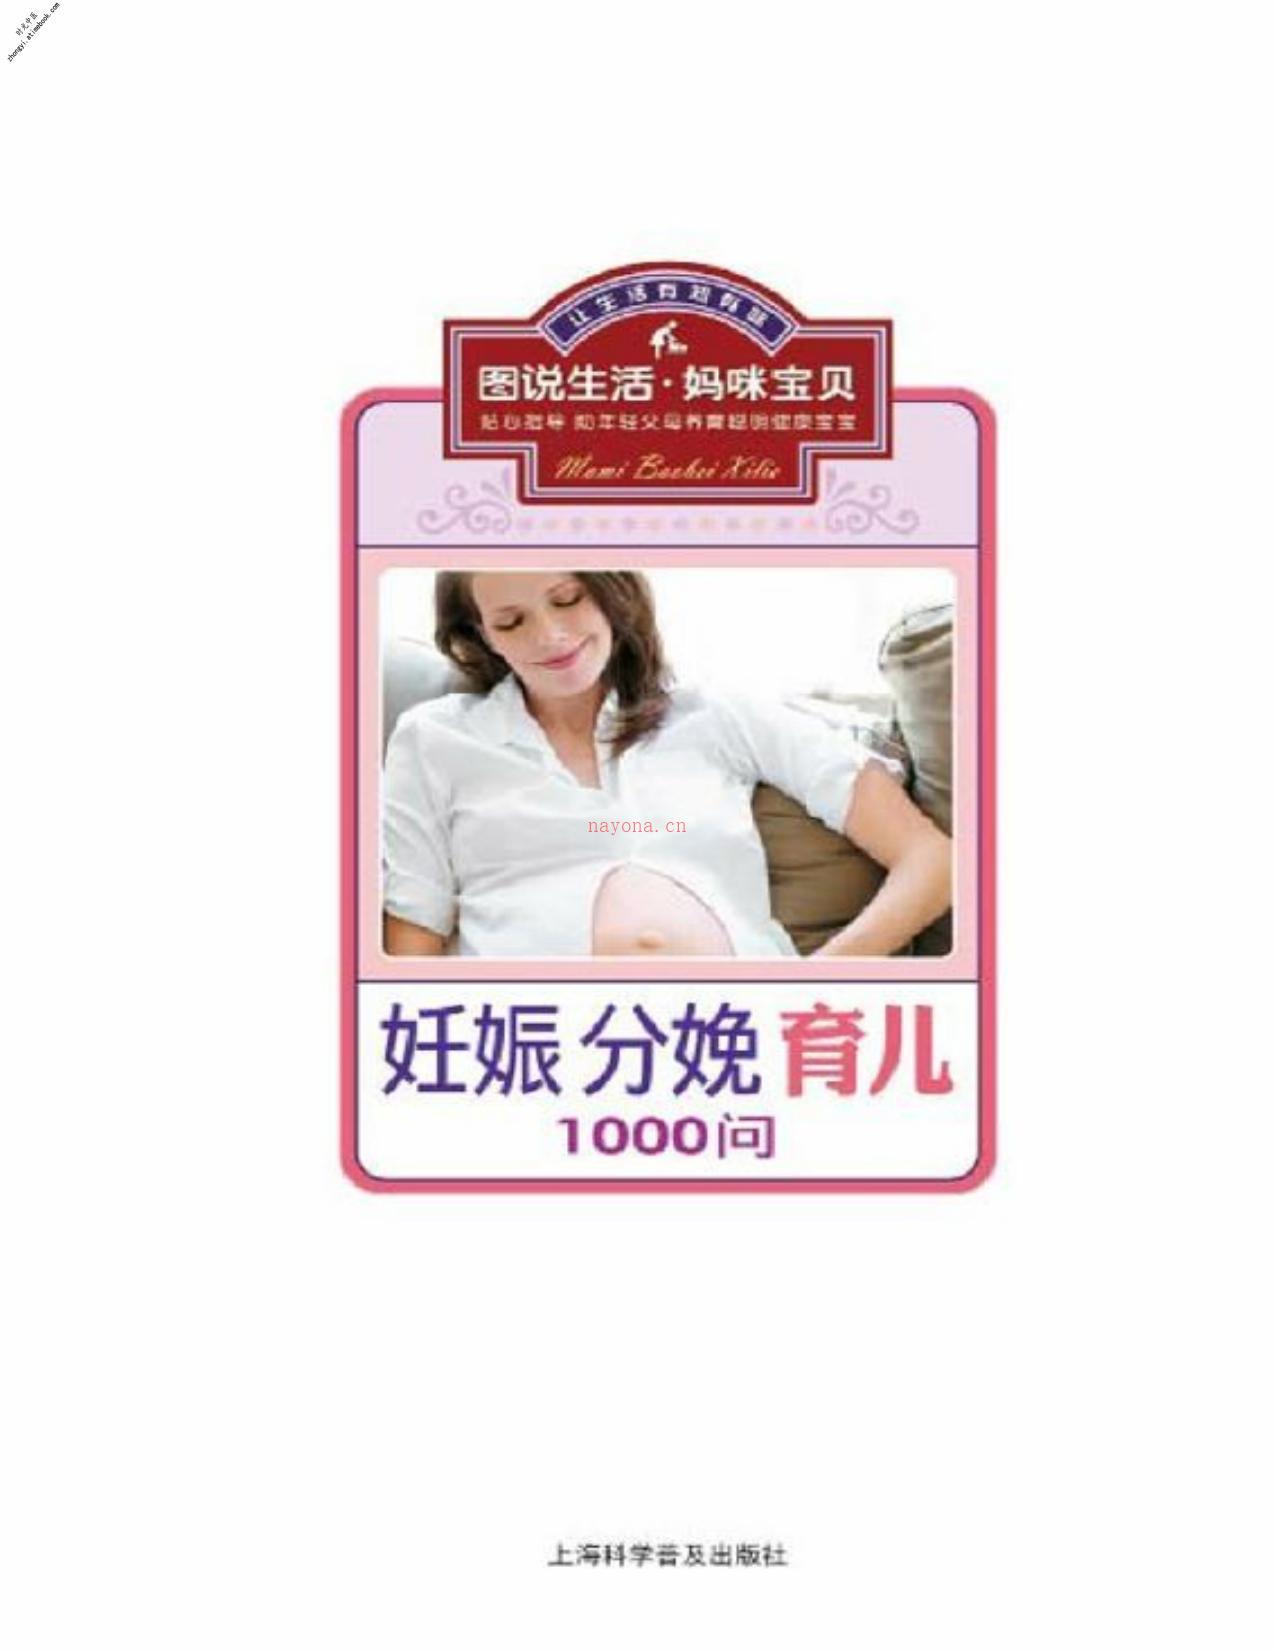 1000问妊娠分娩育儿(图说生活·妈咪宝贝系列) PDF电子版下载